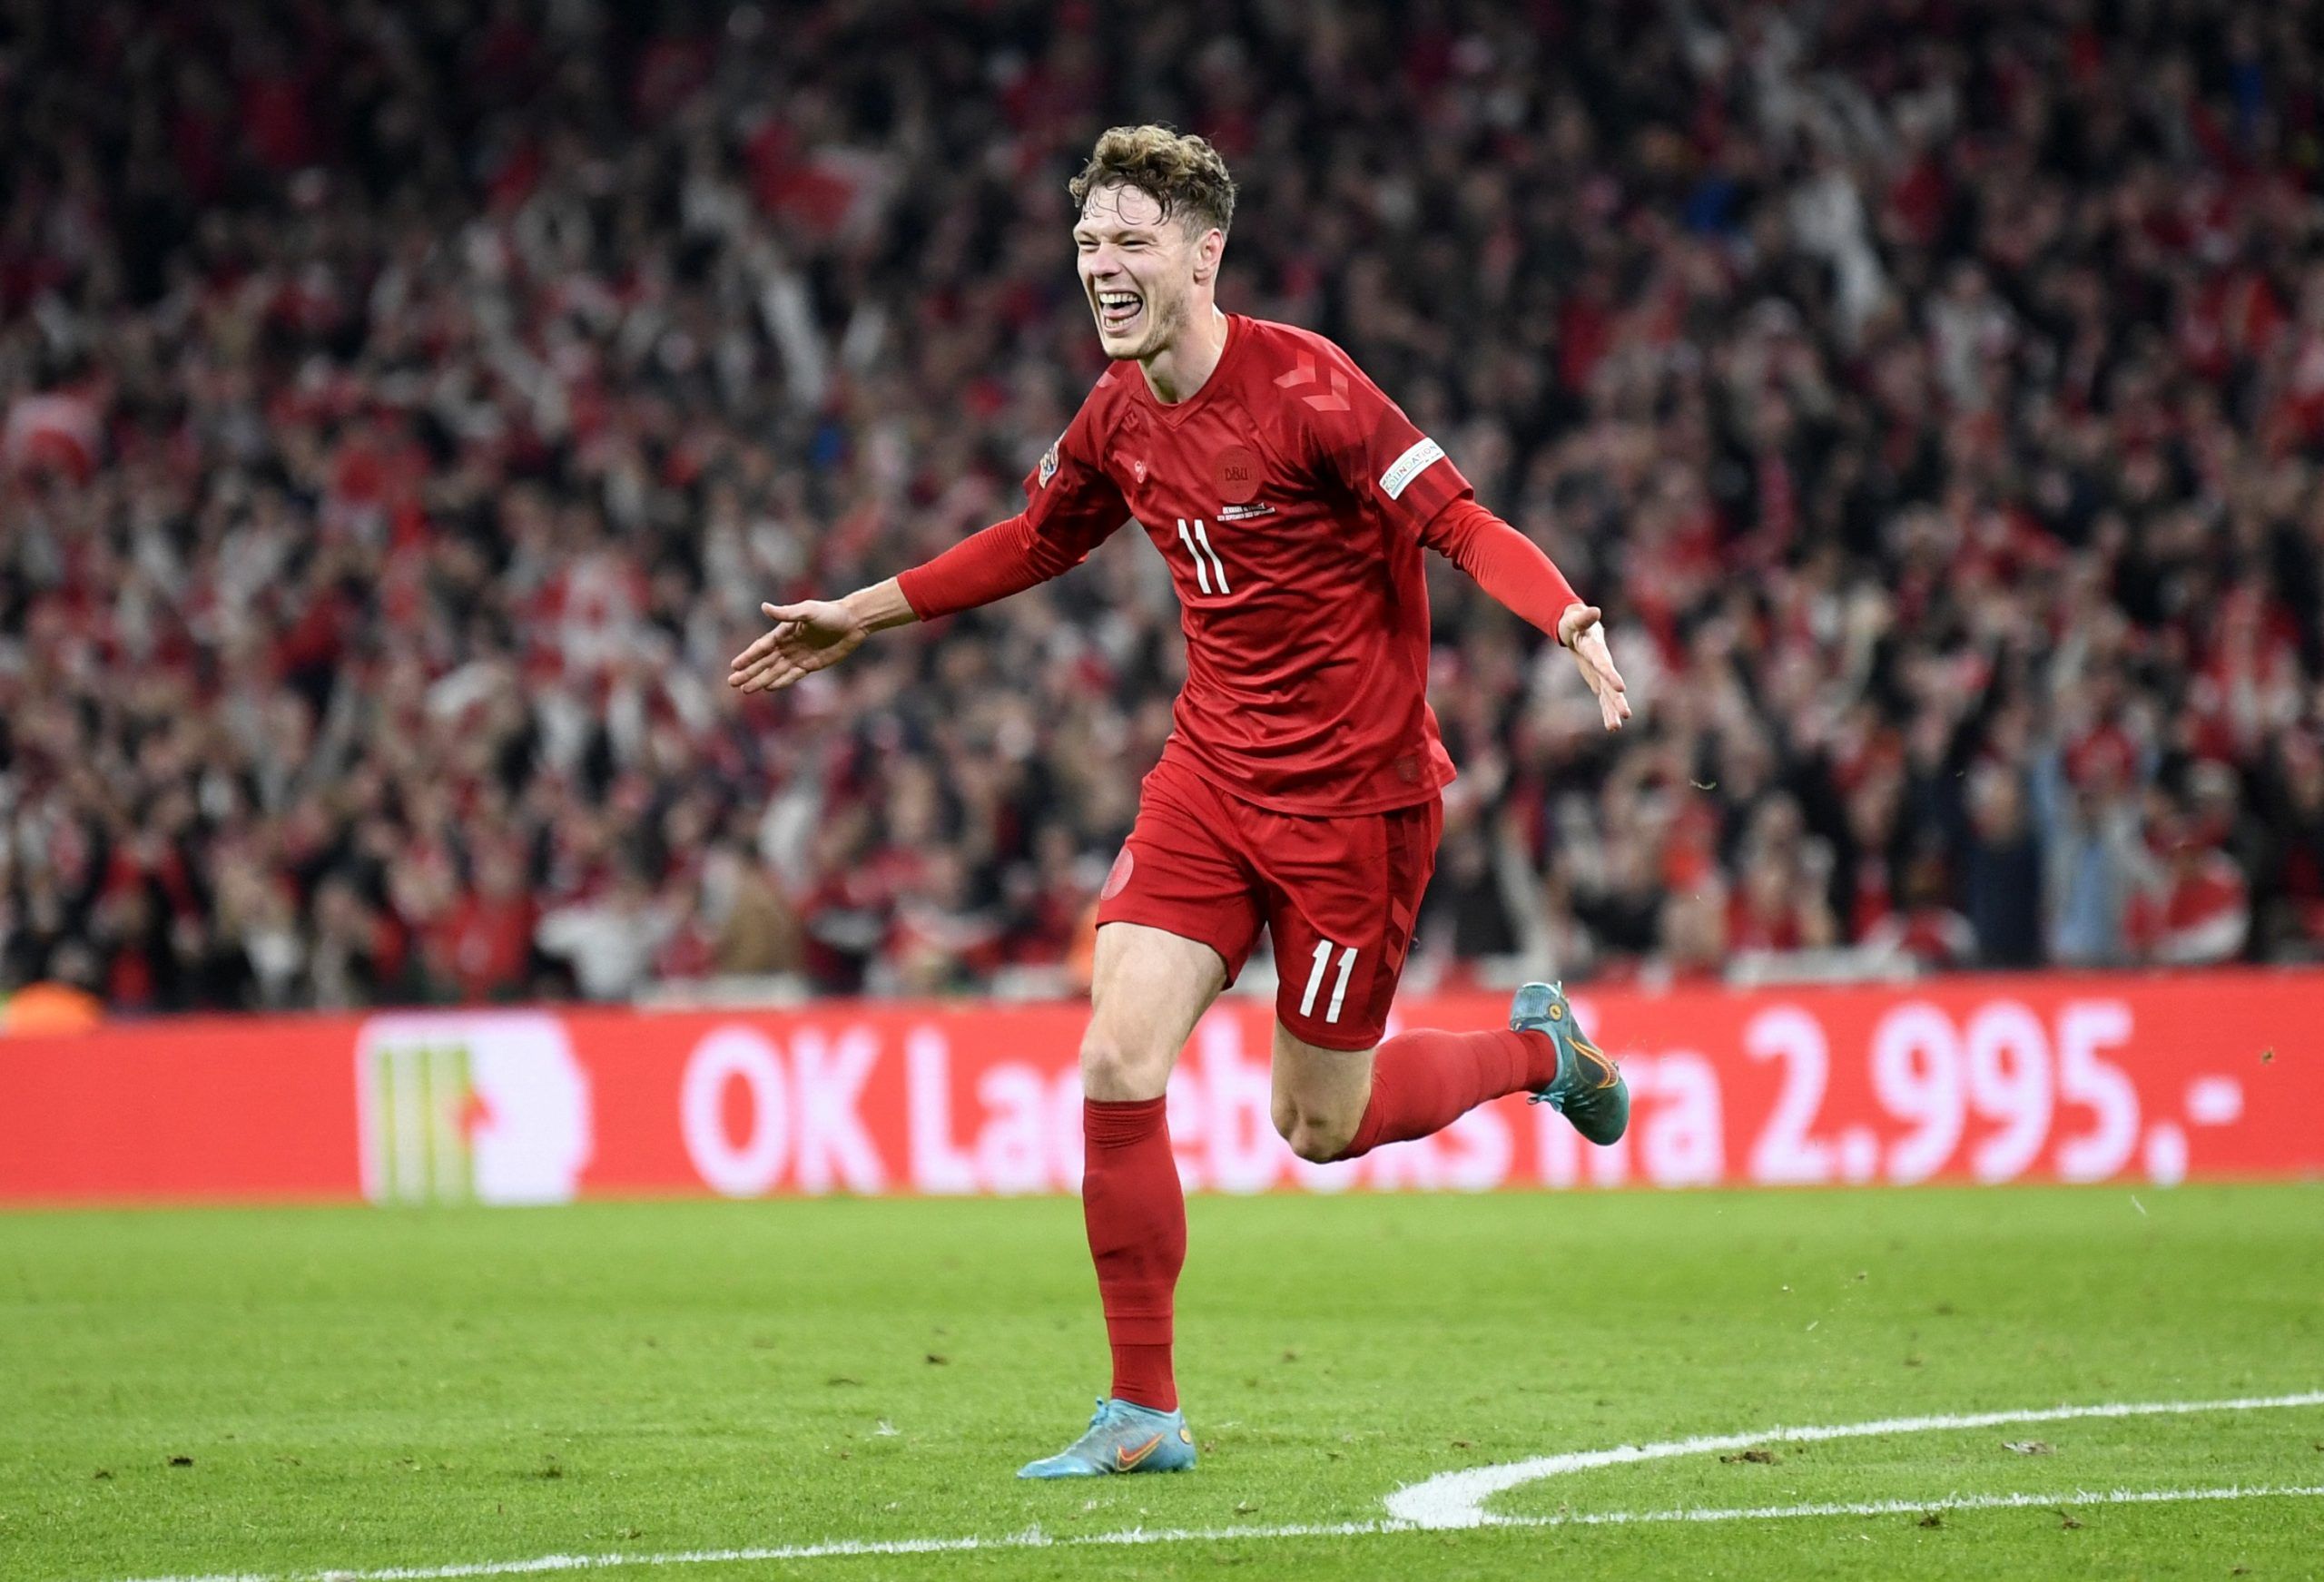 Denmark's Andreas Skov Olsen celebrates scoring their second goal vs France.